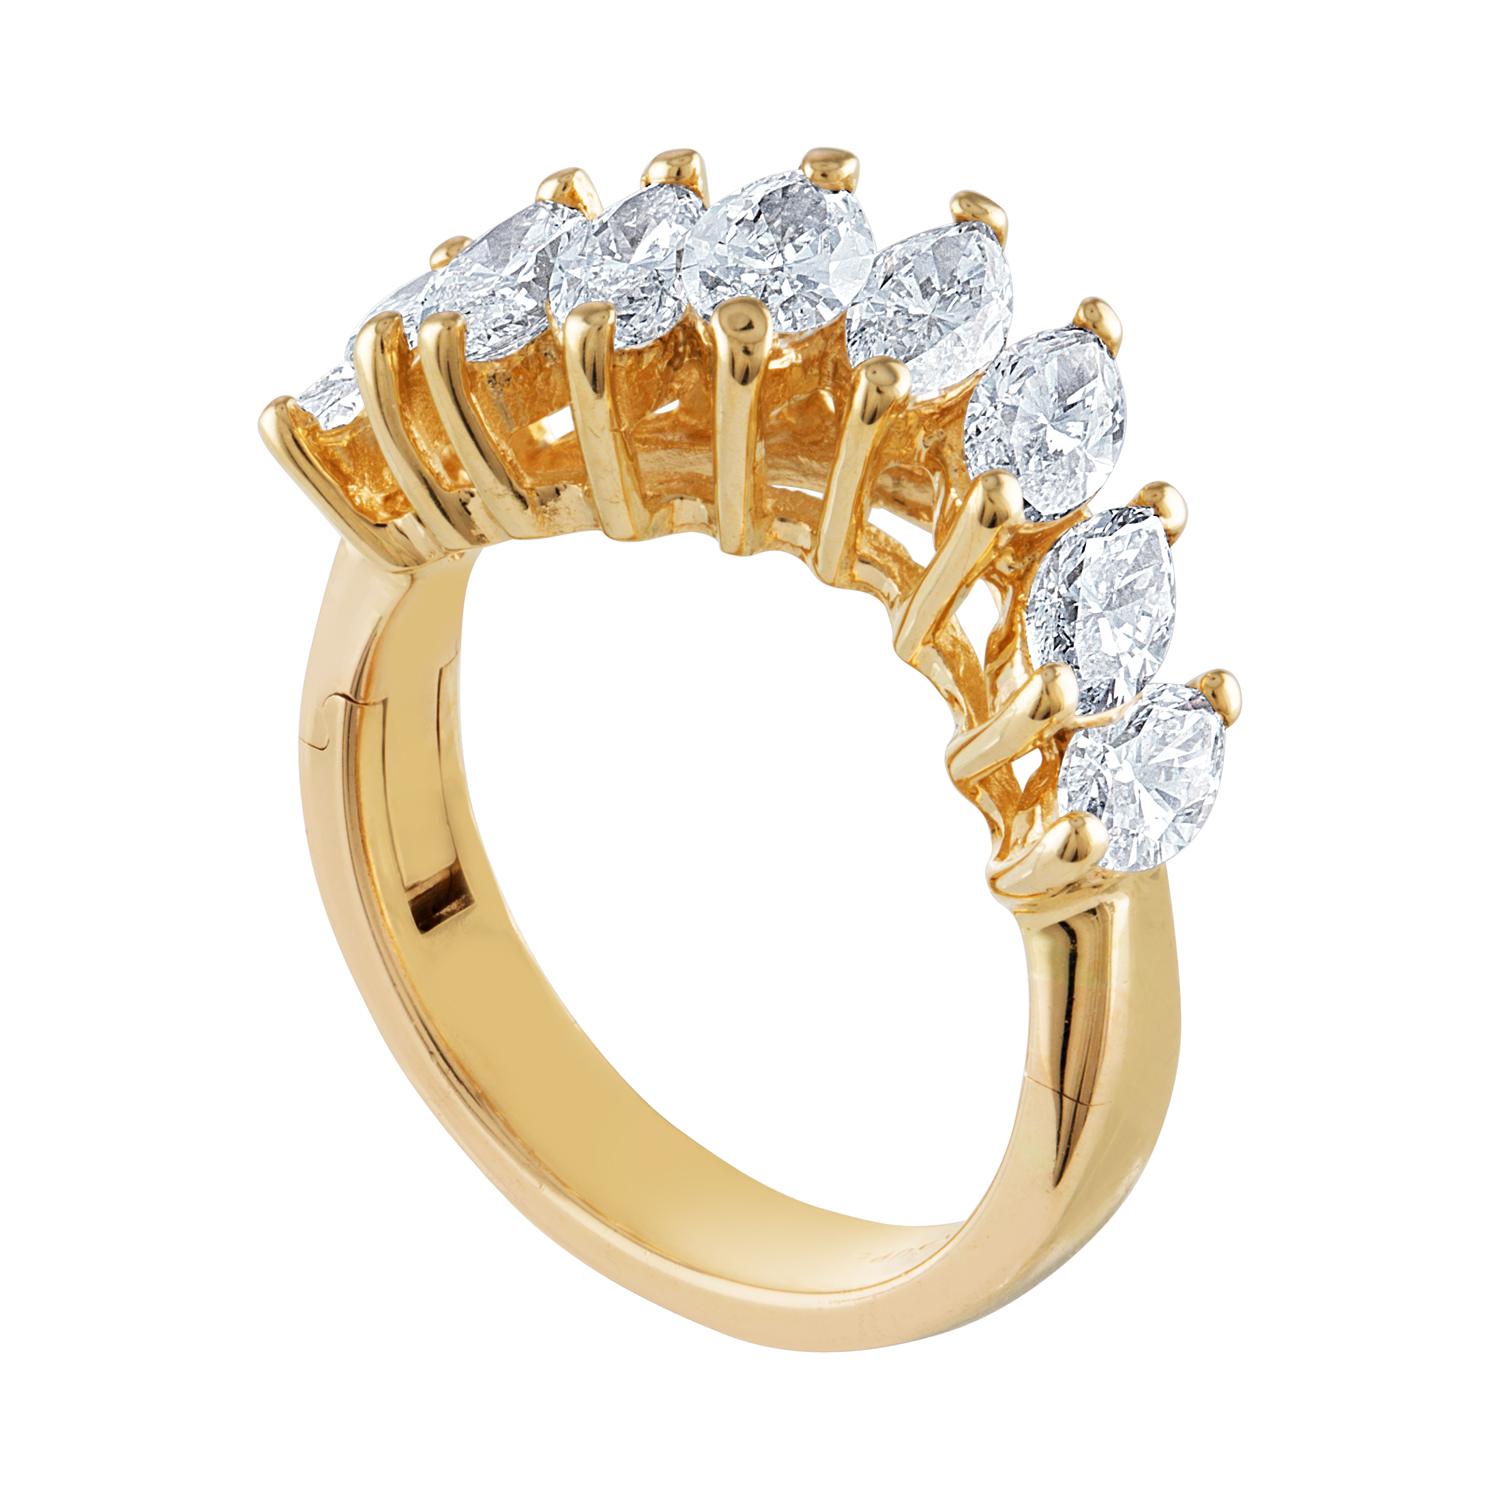 Neunstein-Wellen-Halbbandring
Der Ring ist 14K Gelbgold
Es sind 2,00 Karat Diamanten F VVS
Der Ring ist eine Größe 6,75, sizable.
Dies ist ein Superfit®-Schaft
Die Seite lässt sich aushängen, so dass man den Ring aufstecken kann.
Eine wunderbare